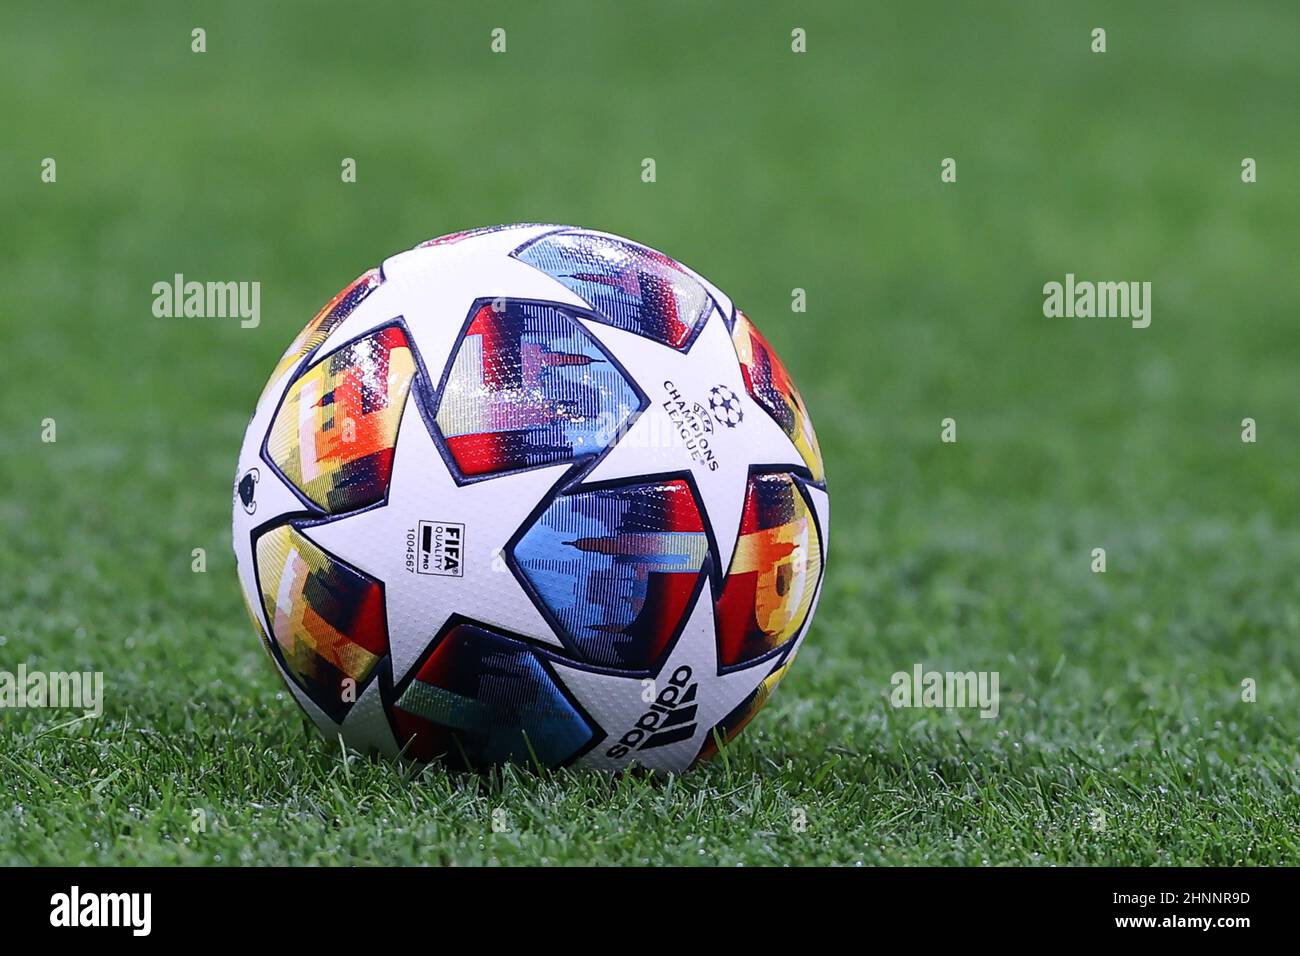 Der offizielle UEFA Champions League-Spielball von Adidas Sankt Petersburg  22 Finale während der UEFA Champions League 2021/22 Runde von 16 - erstes  Bein footb Stockfotografie - Alamy